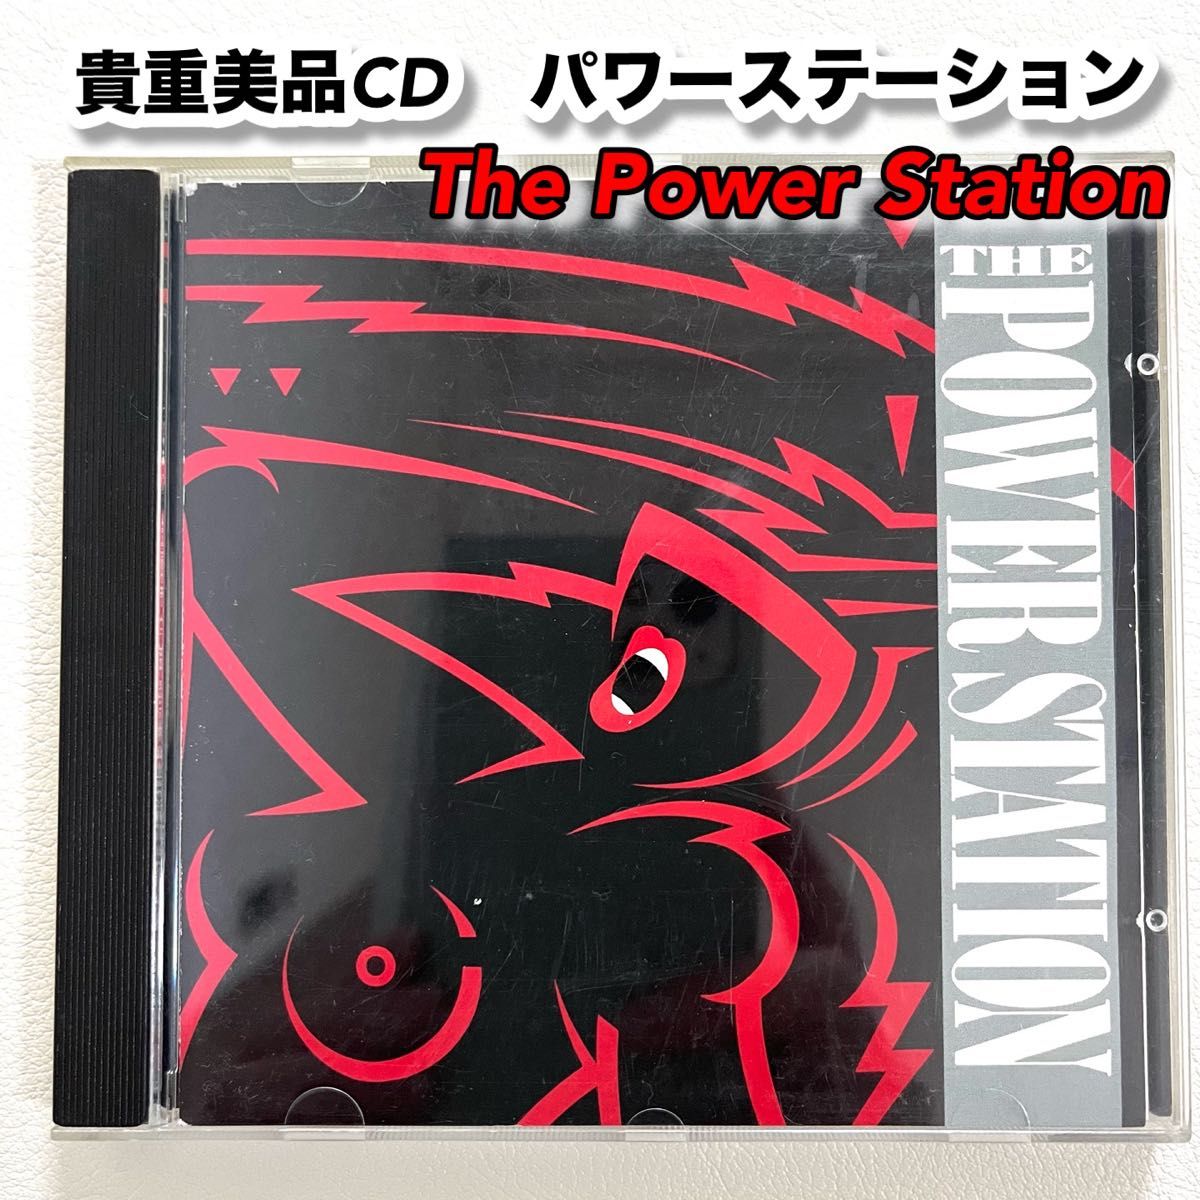 パワーステーション (デュランデュラン) 日本盤CD  The Power Station  送料込 美品